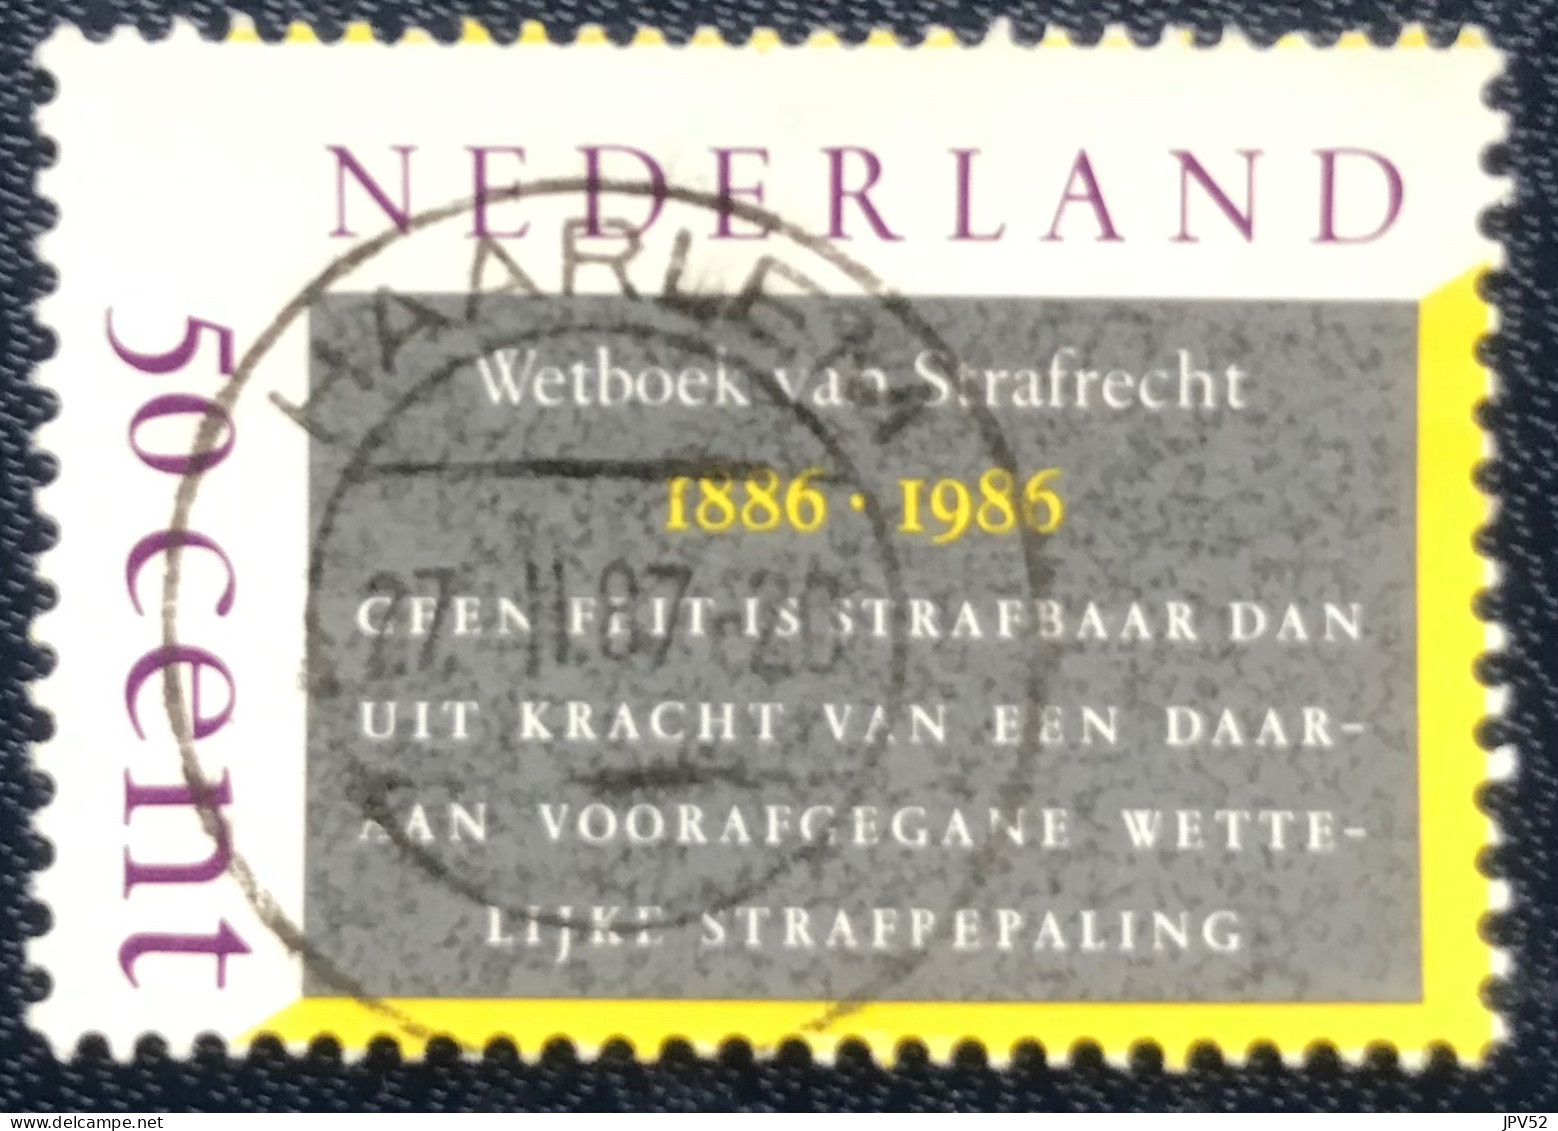 Nederland - C1/24 - 1985 - (°)used - Michel 1285 - 100j Wetboek Van Strafrecht - HAARLEM - Gebraucht